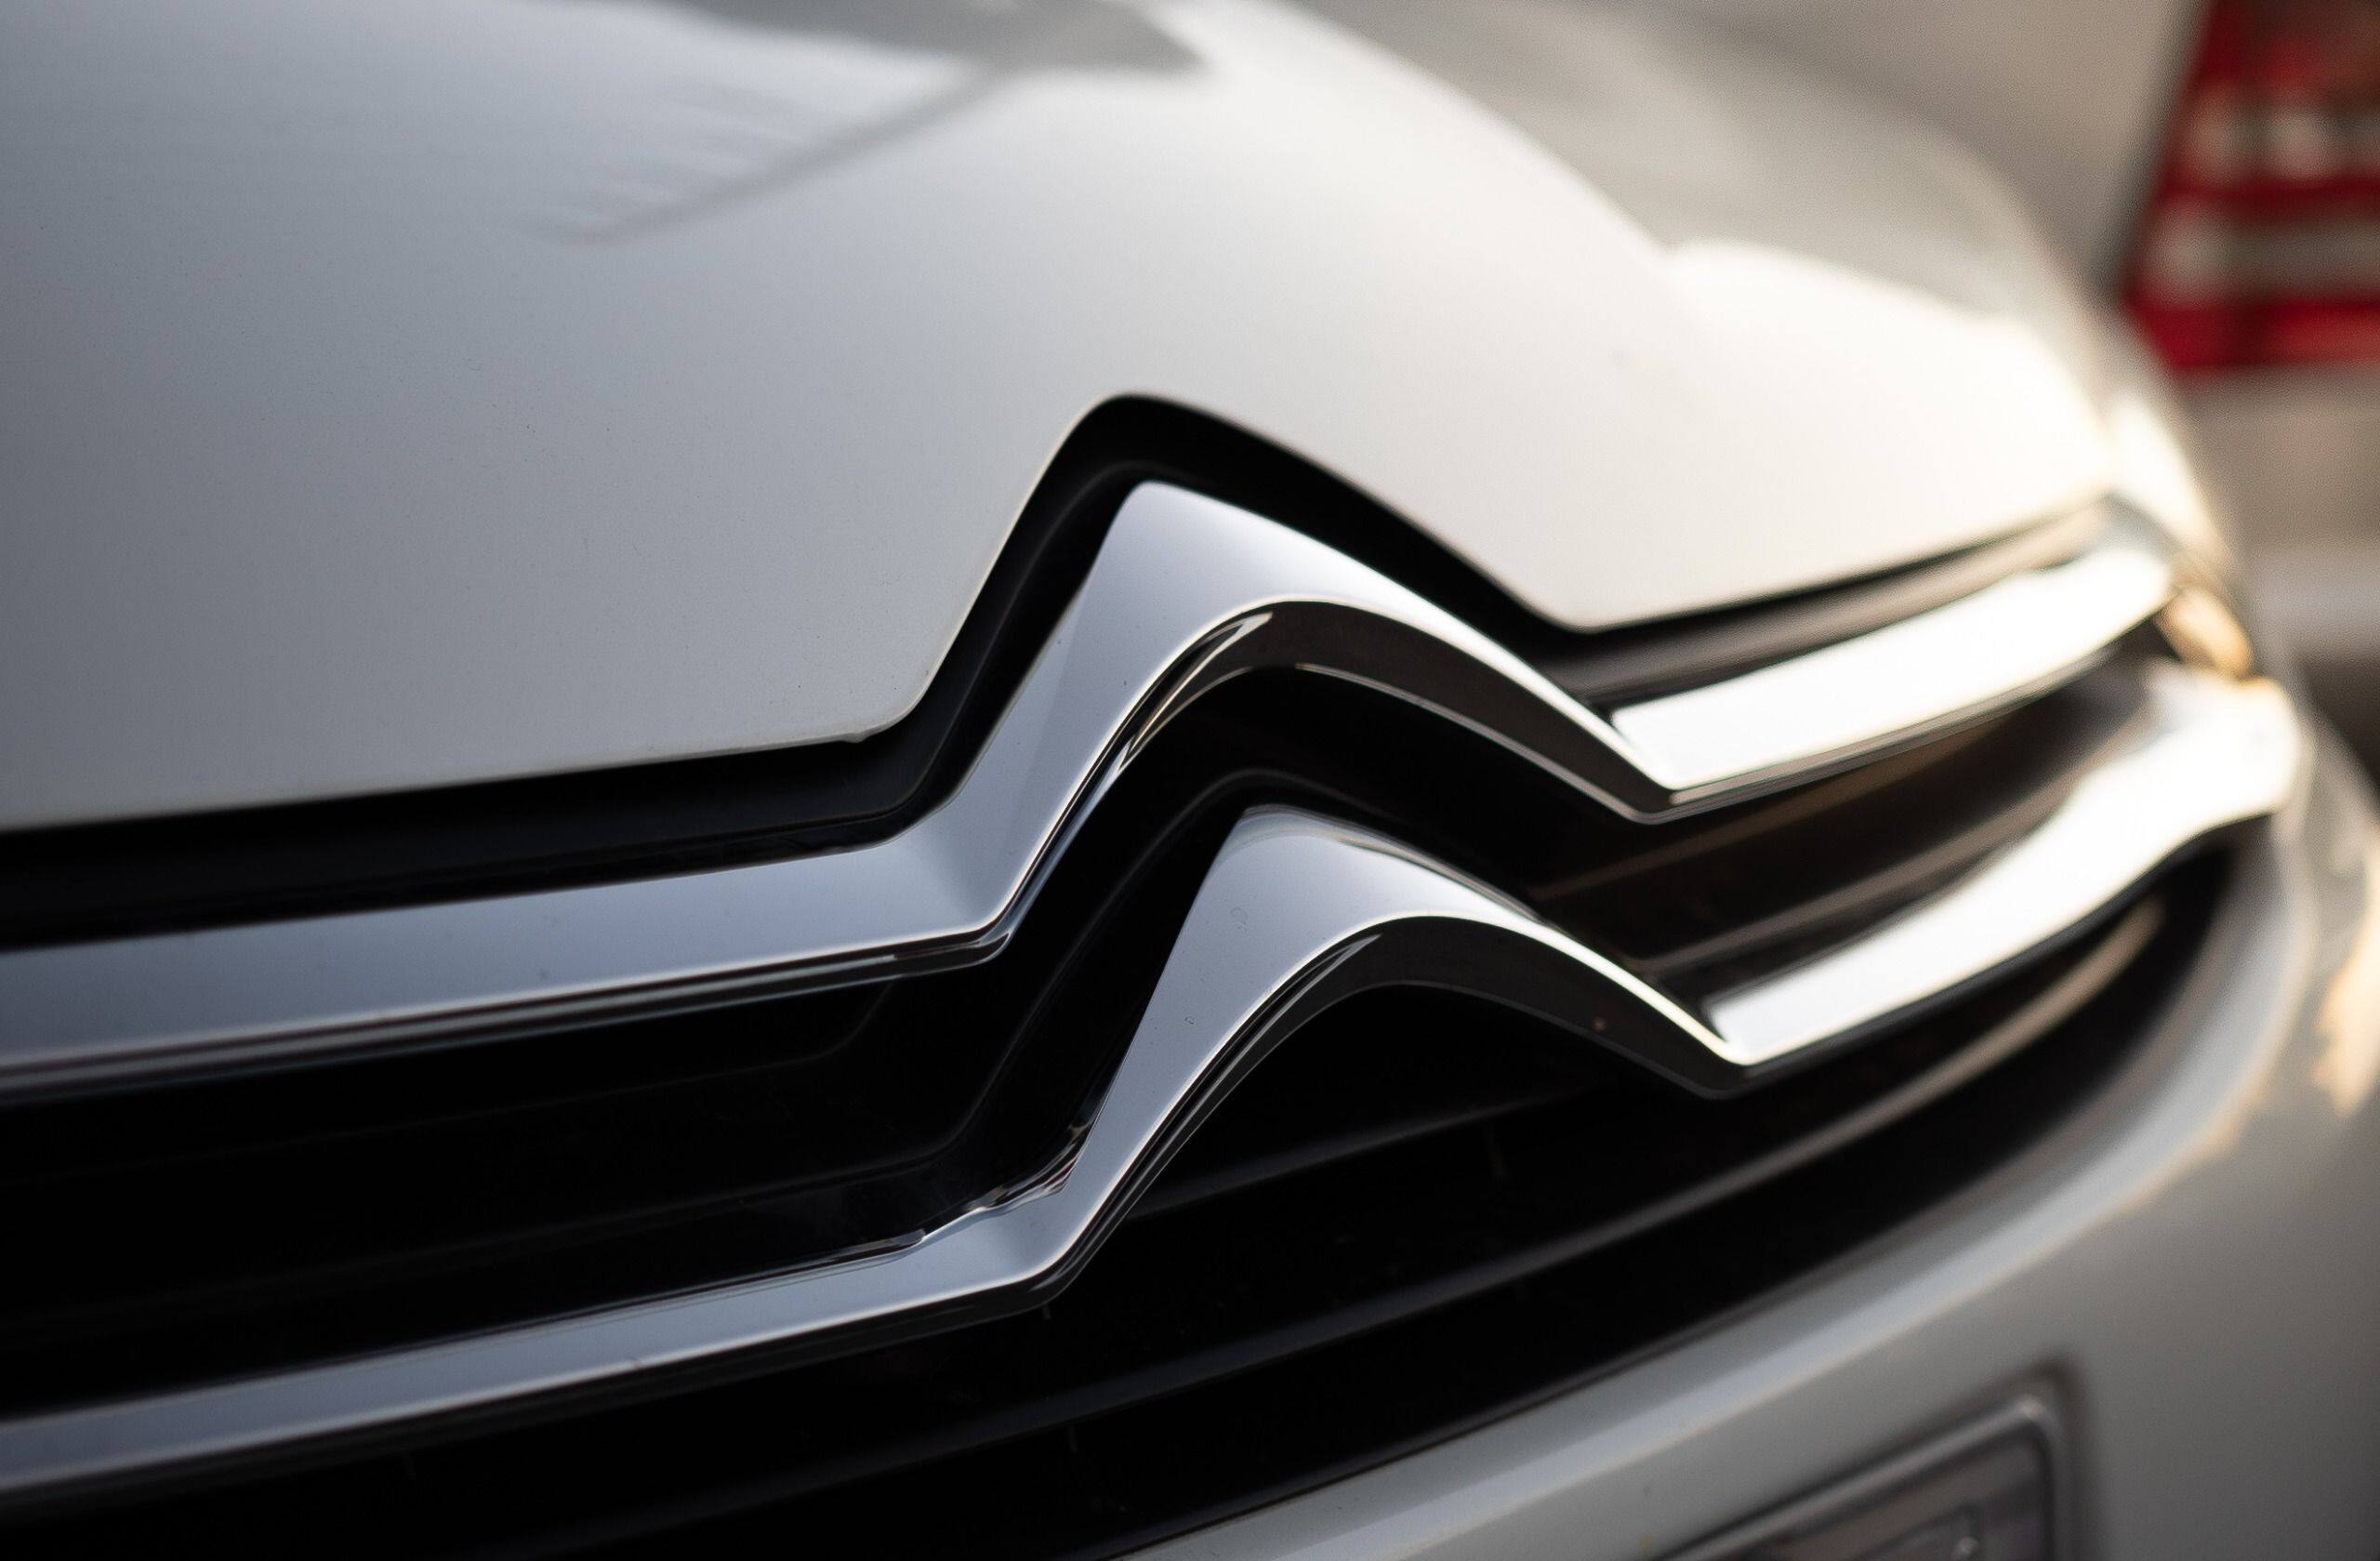 Citroën marque Nouveau logo voiture symbole avec Nom blanc